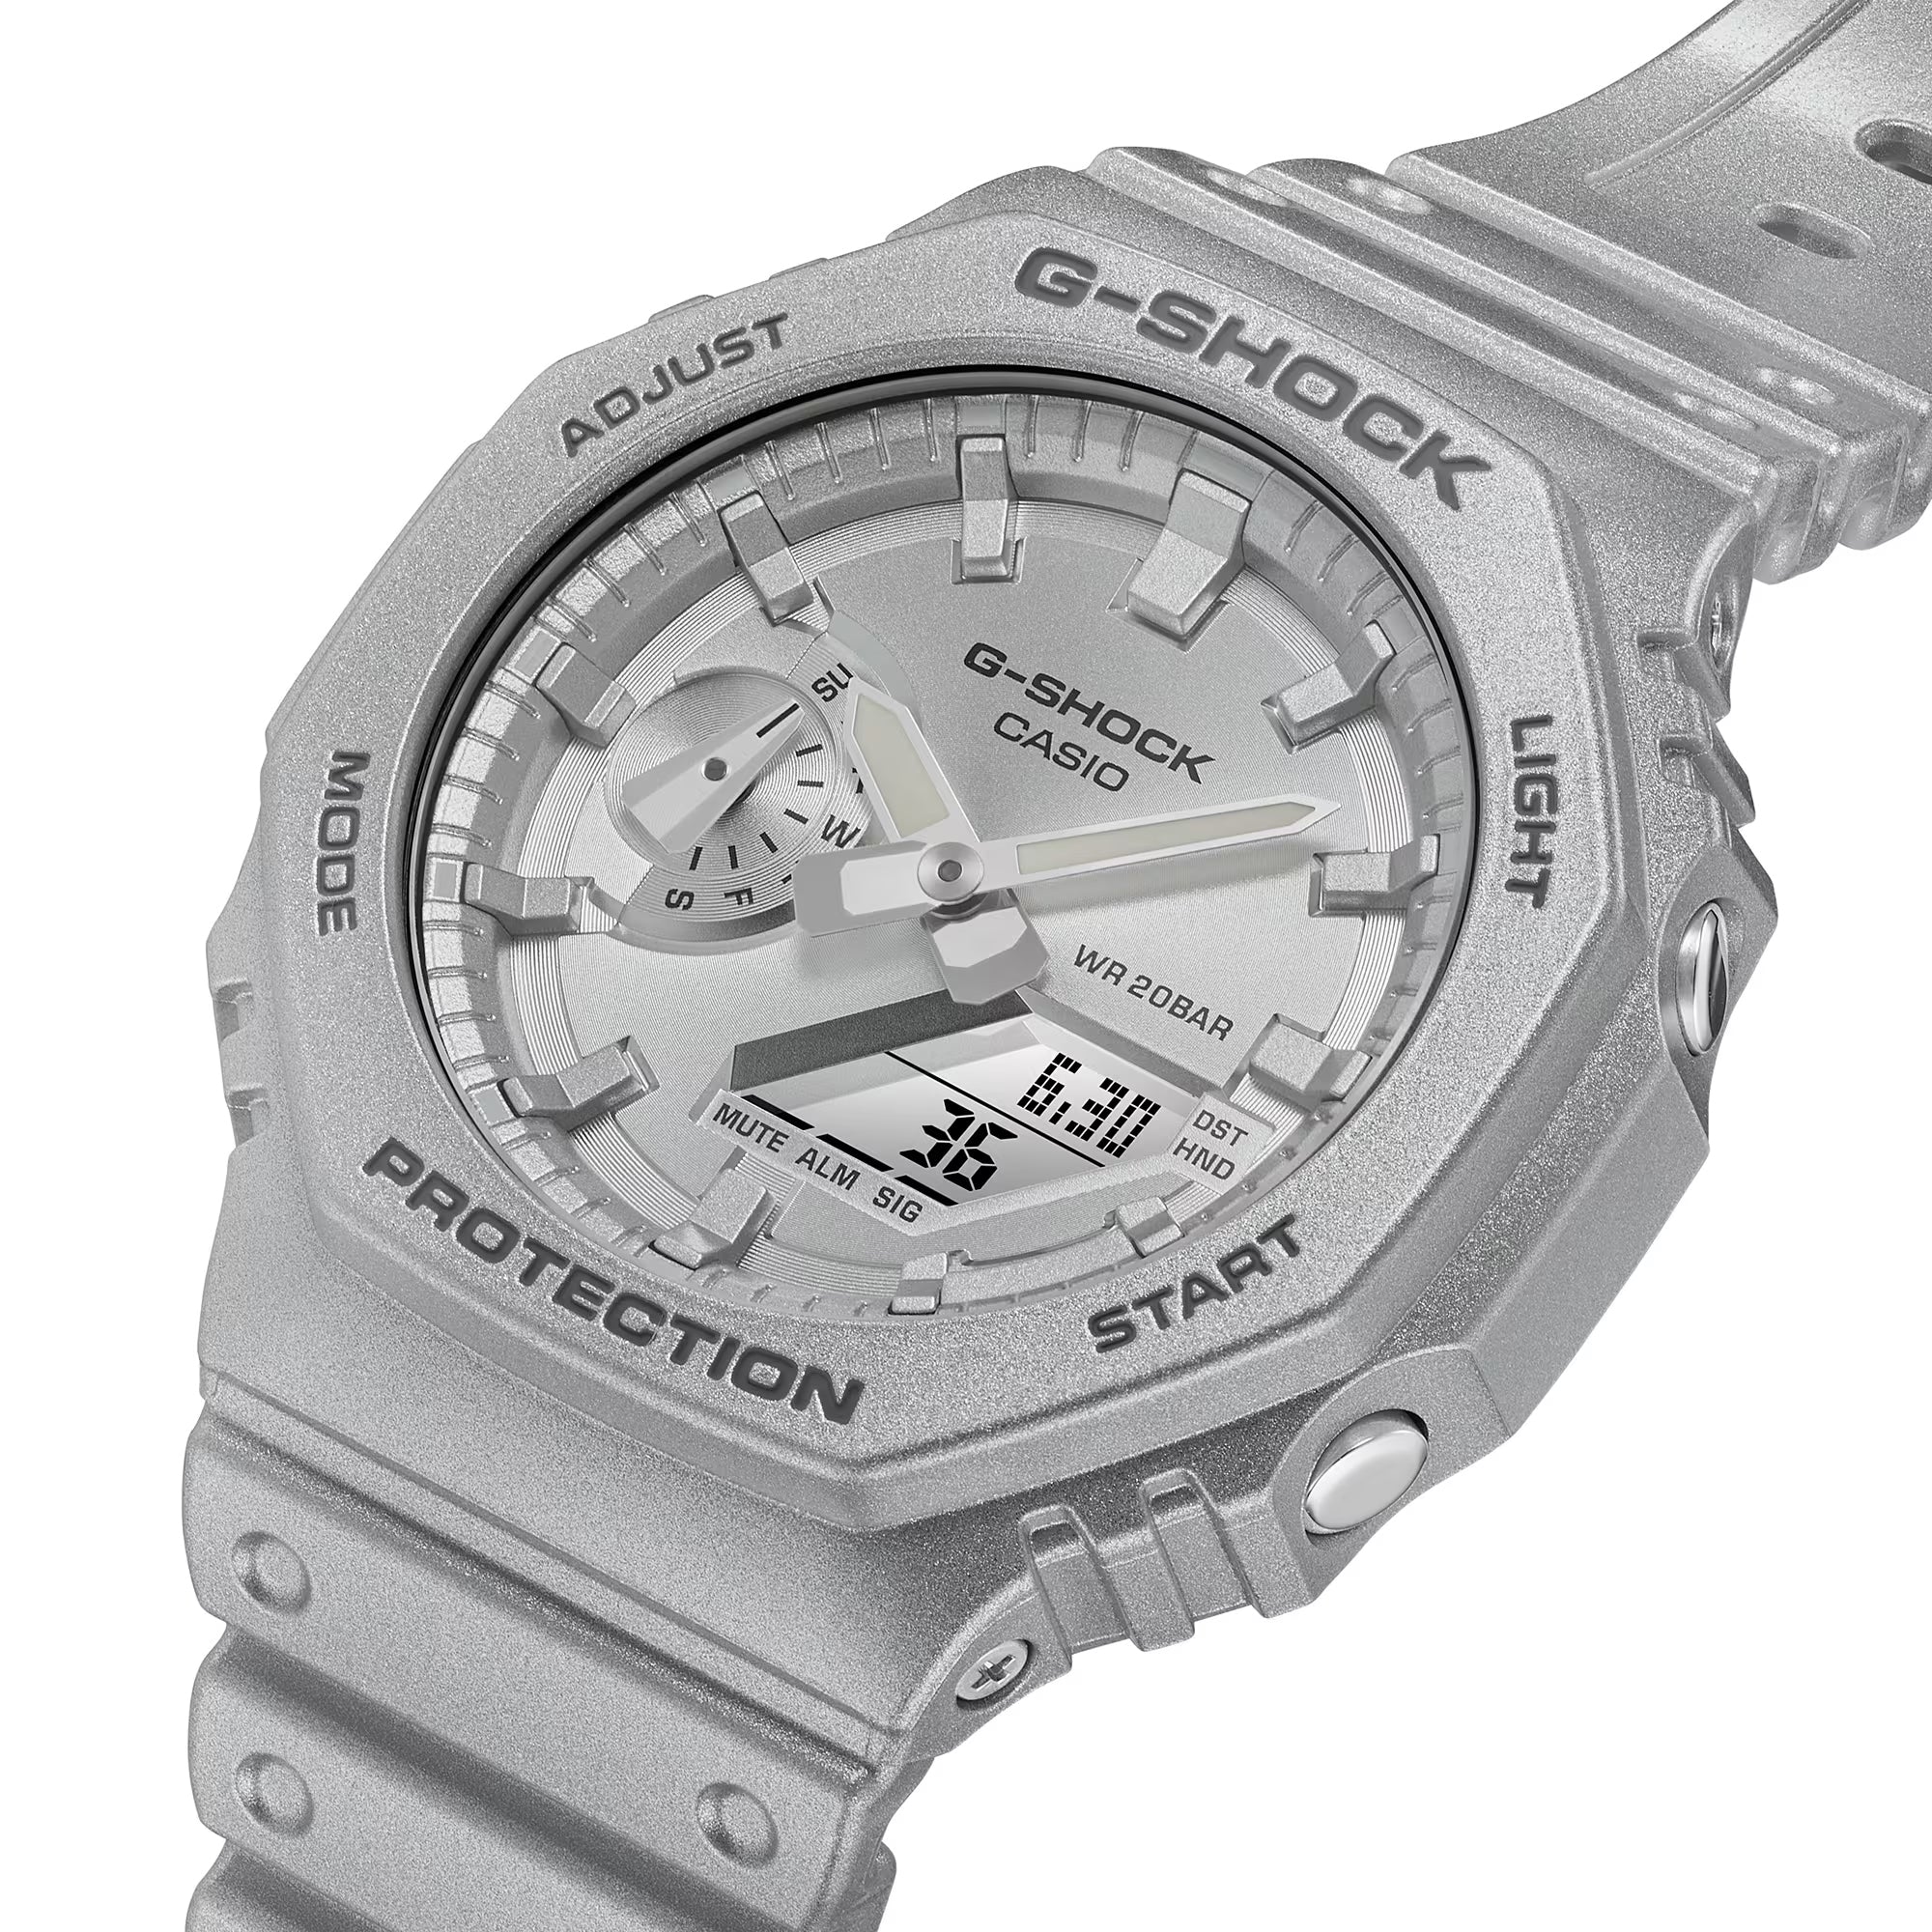 Casio G-Shock Forgotten Future Silver Metallic CasiOak Watch GA2100FF-8A